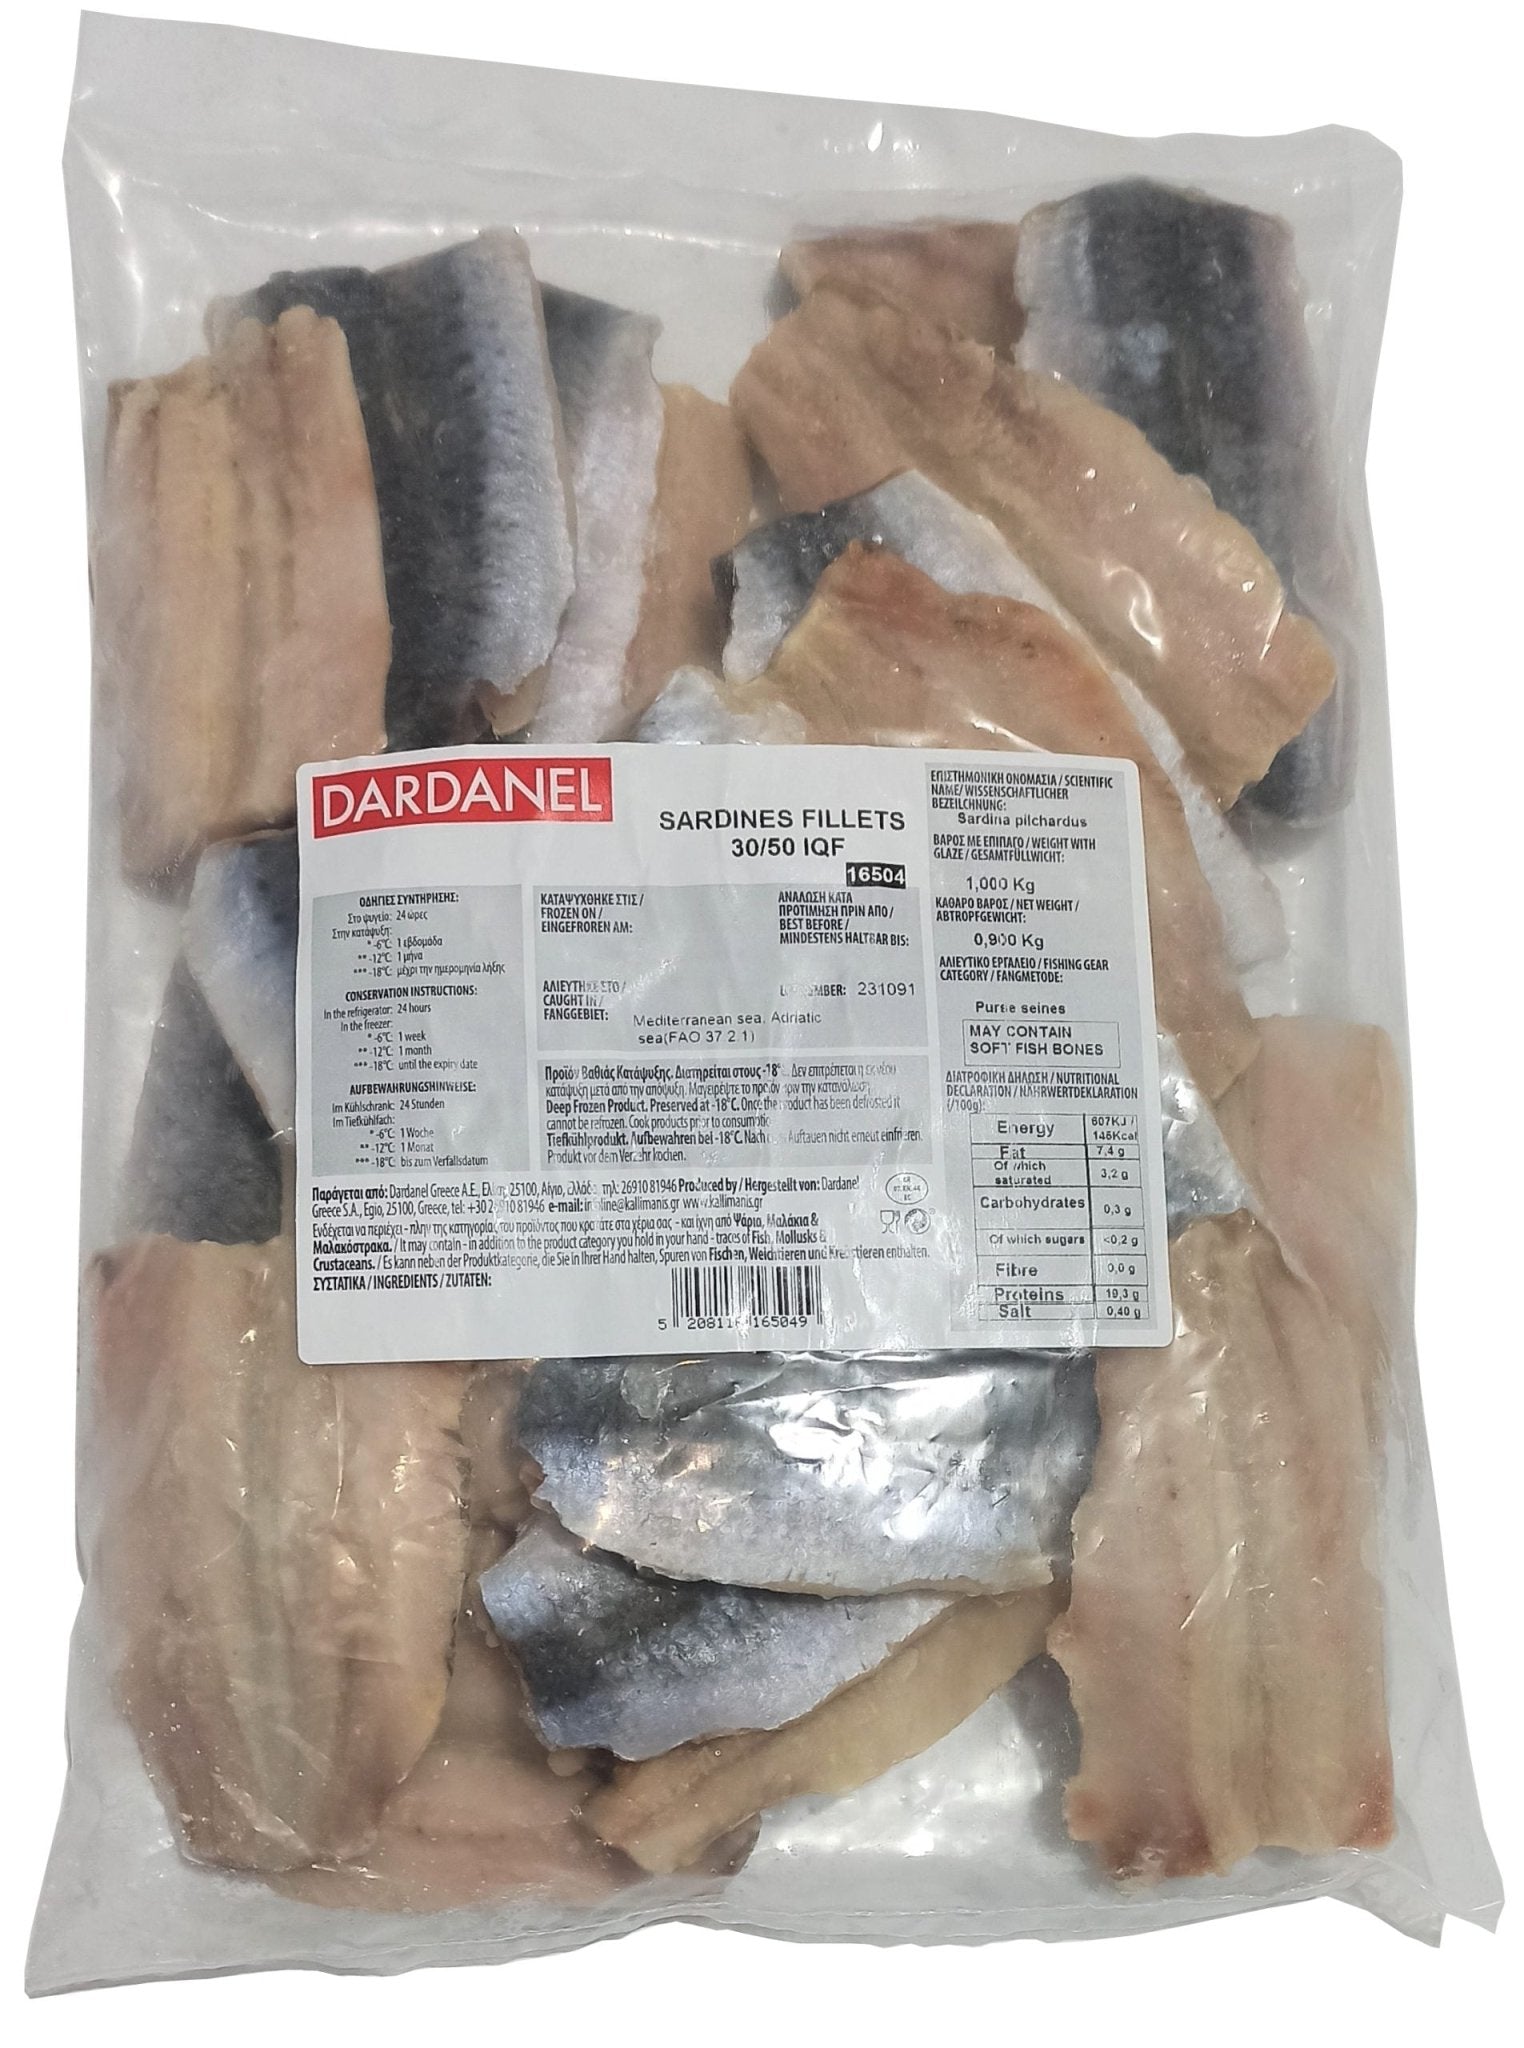 Dardanel Sardines Fillets 30/50 IQF (1KG) - Aytac Foods